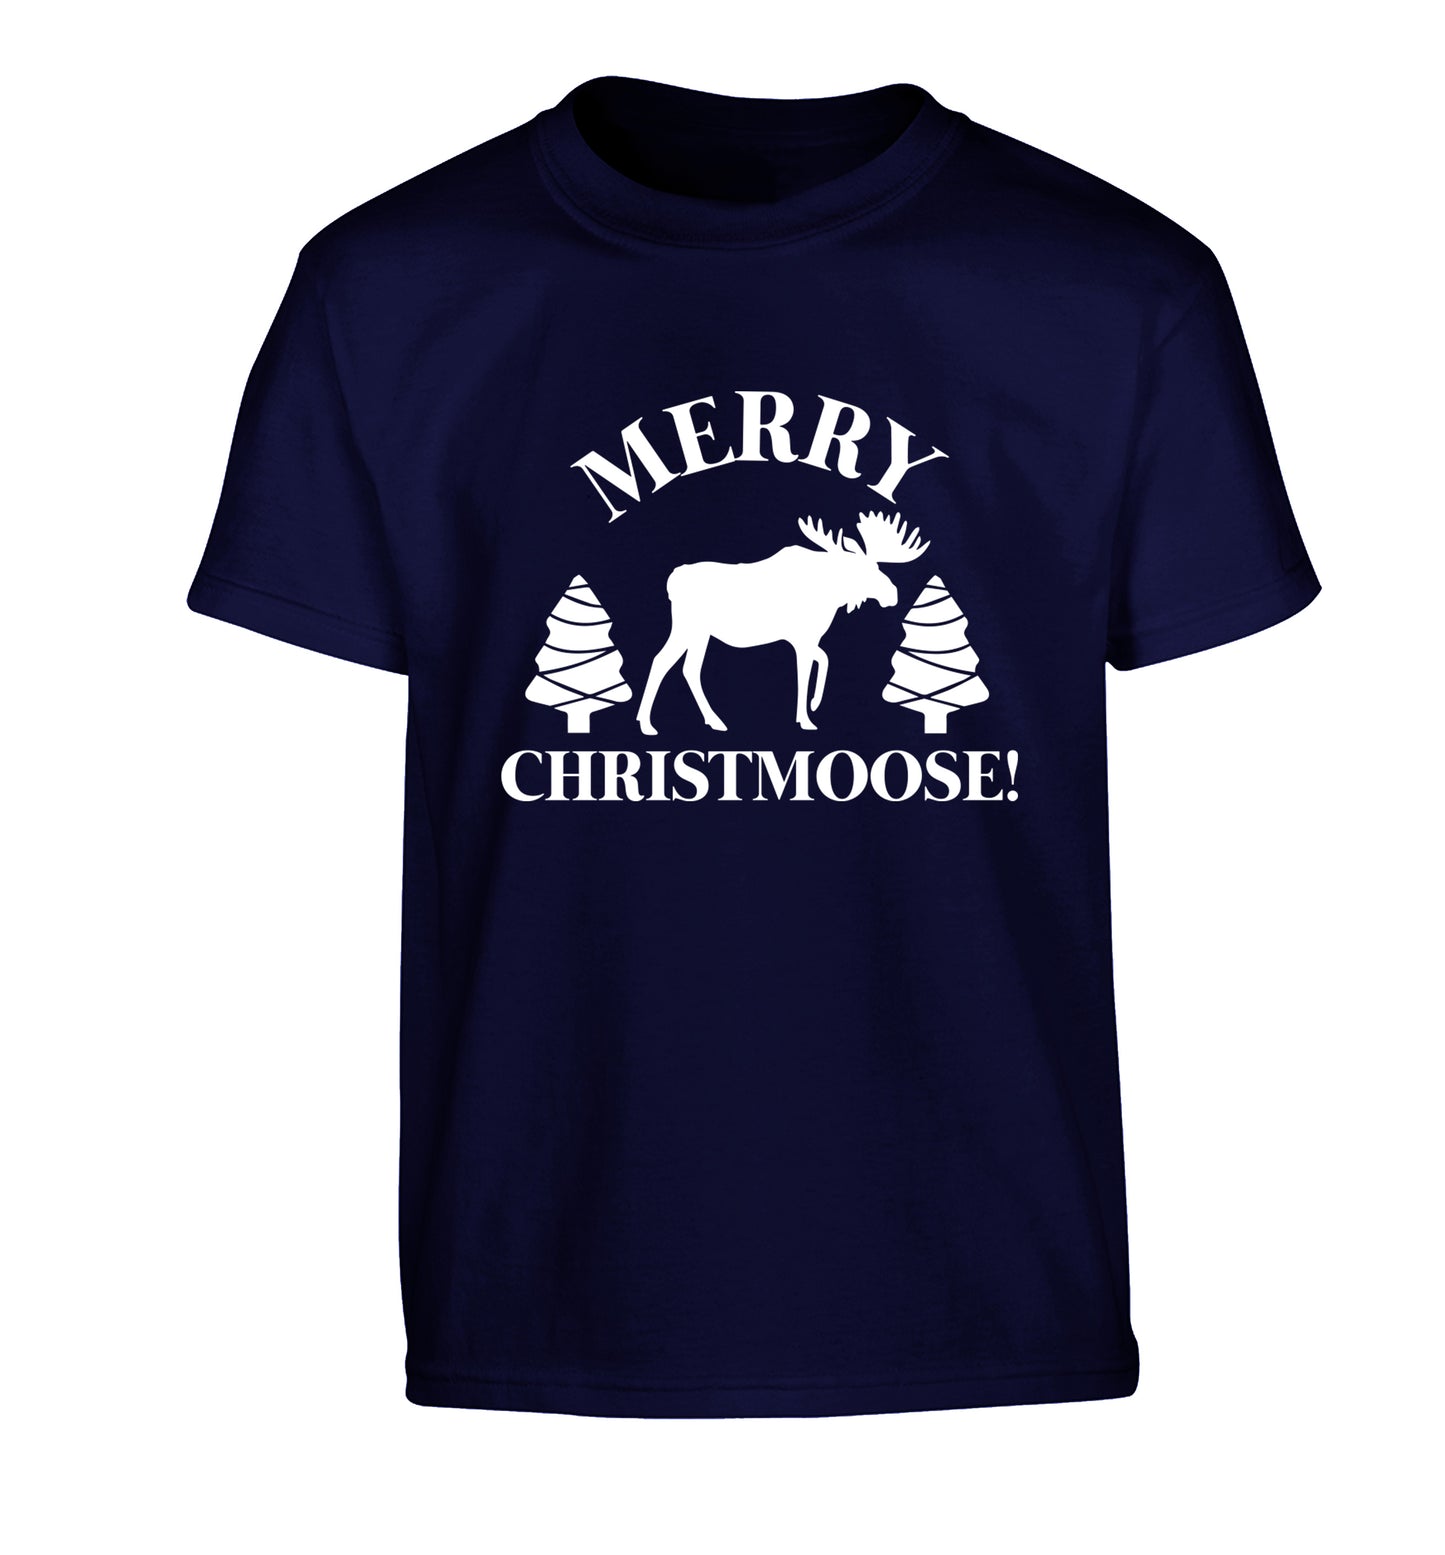 Merry Christmoose Children's navy Tshirt 12-14 Years